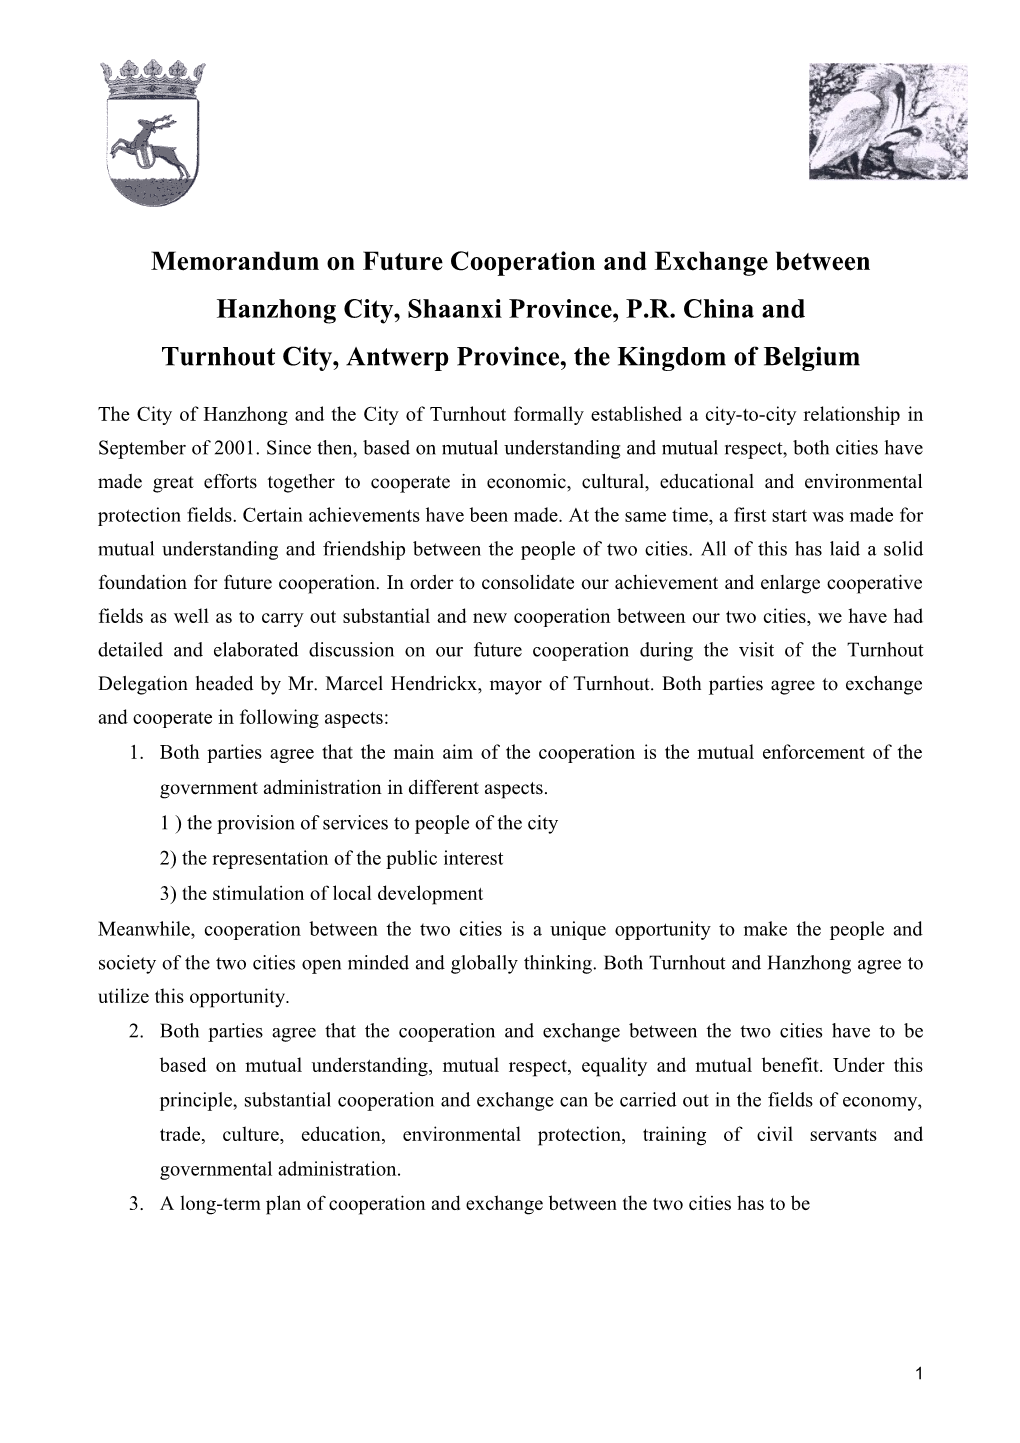 Memorandum on Future Cooperation and Exchange Between